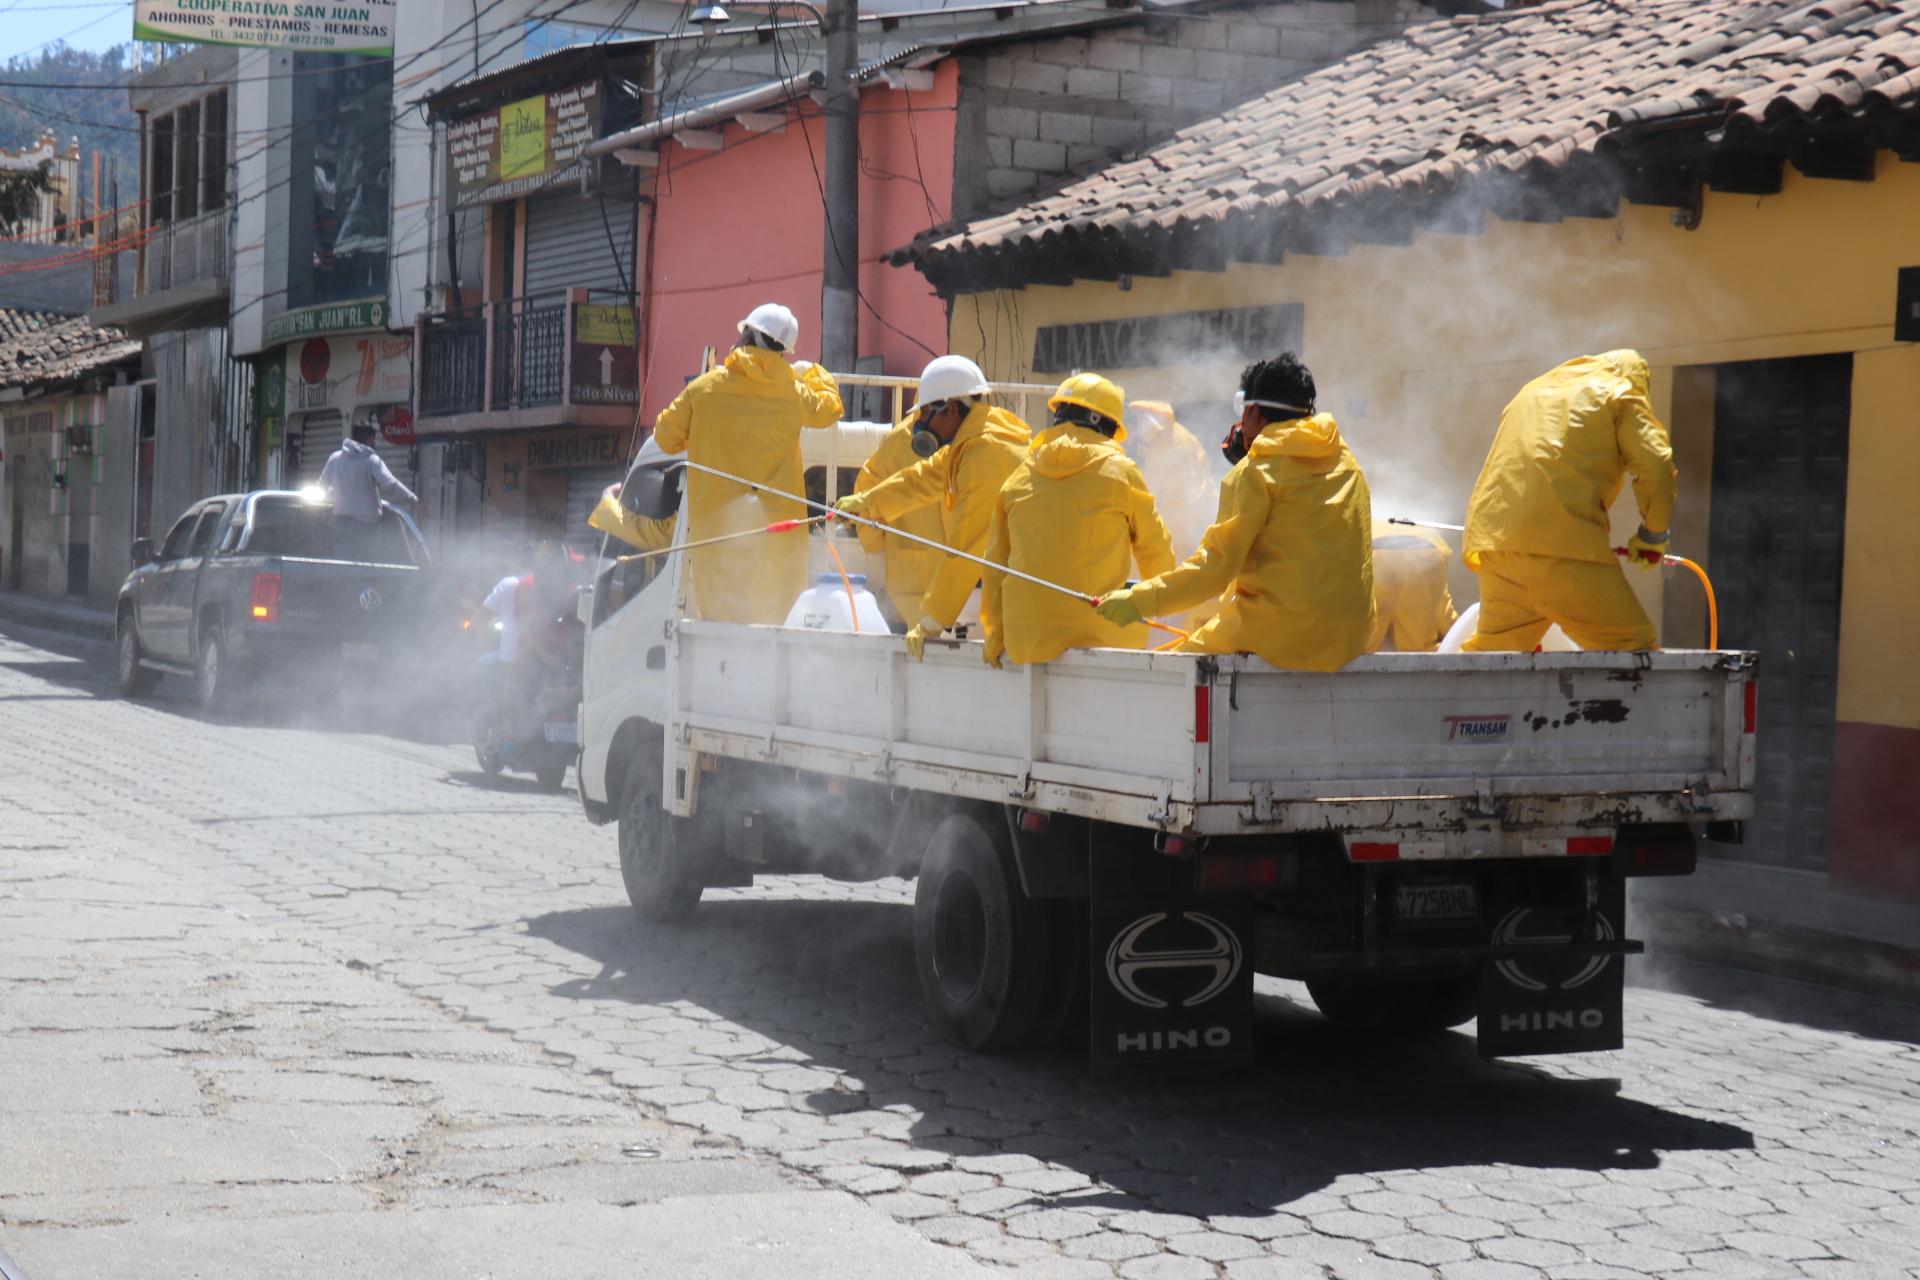 Empleados de una empresa de limpieza fumigan una de  las calles de Chichicastenango, Quiché, para prevenir contagio de coronavirus.  (Foto Prensa Libre: Héctor Cordero)